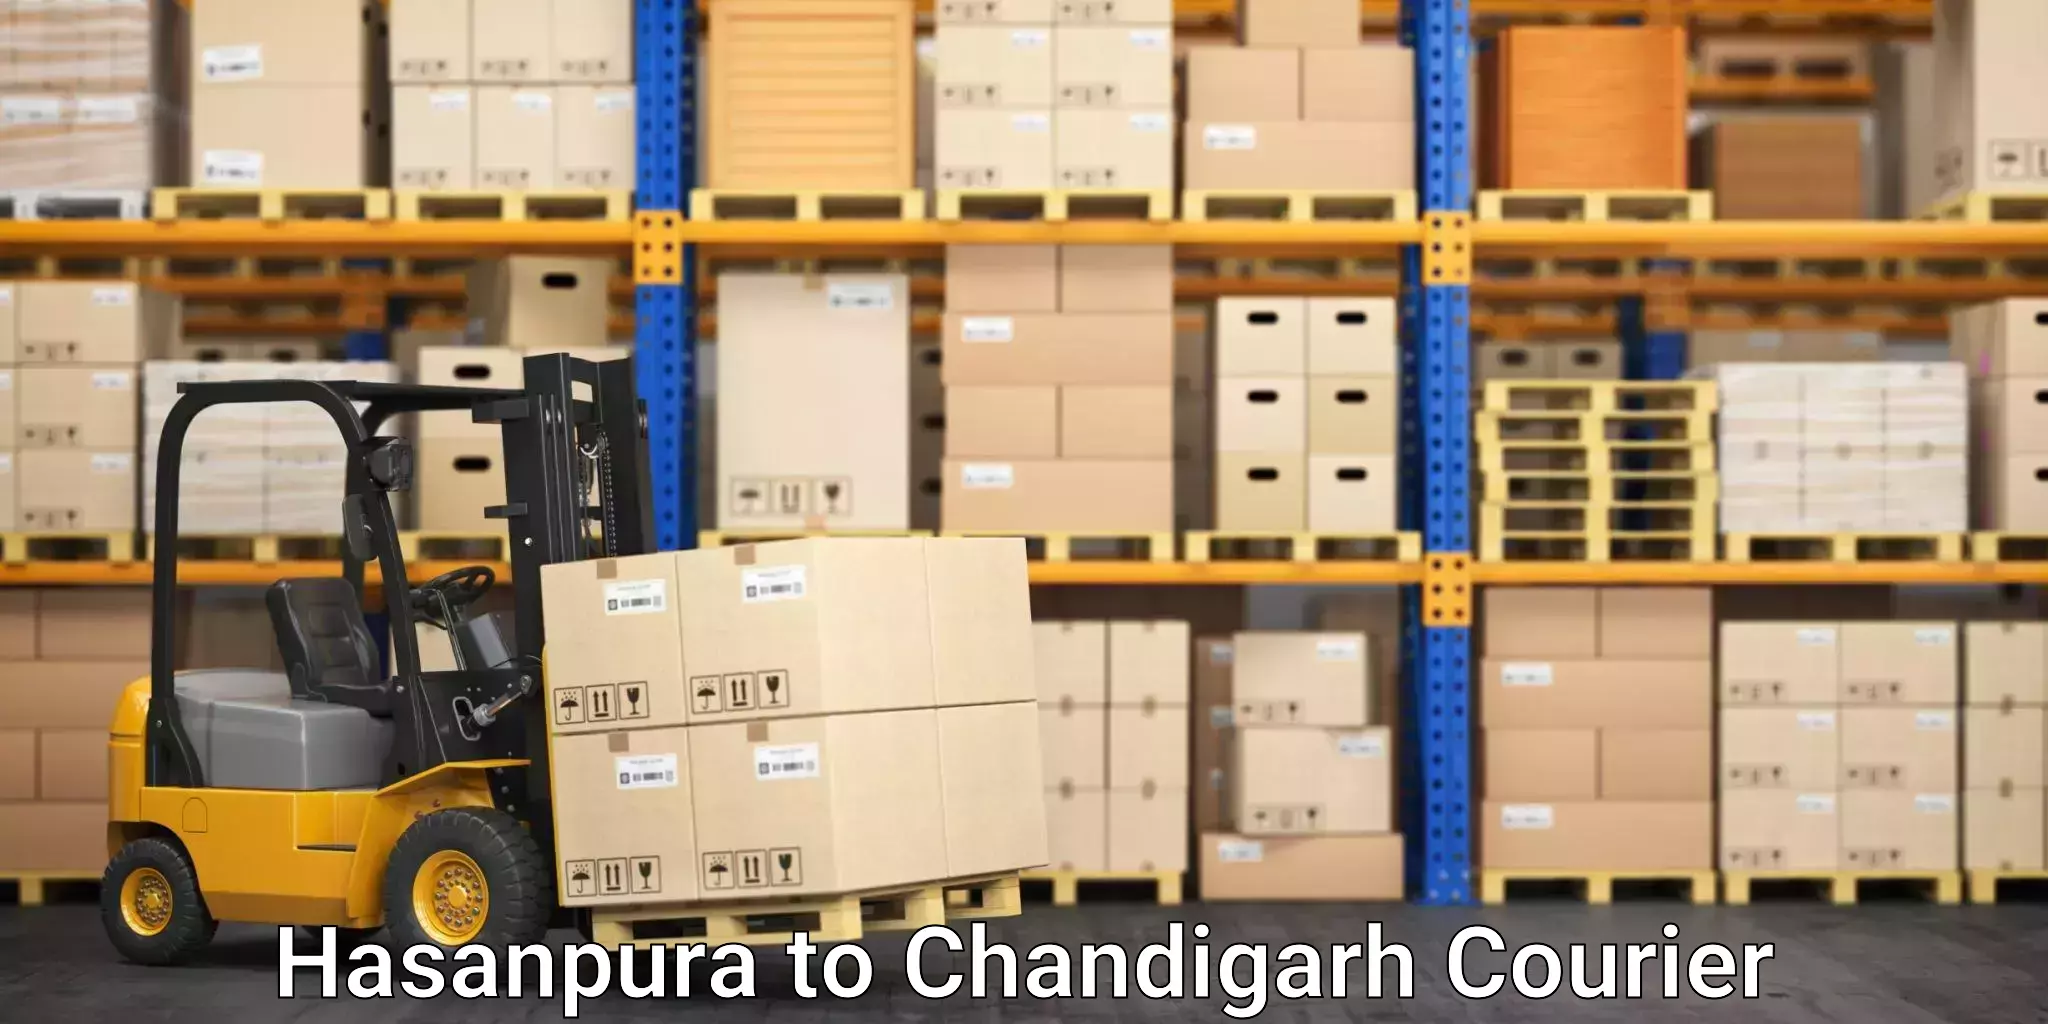 Furniture moving strategies Hasanpura to Chandigarh